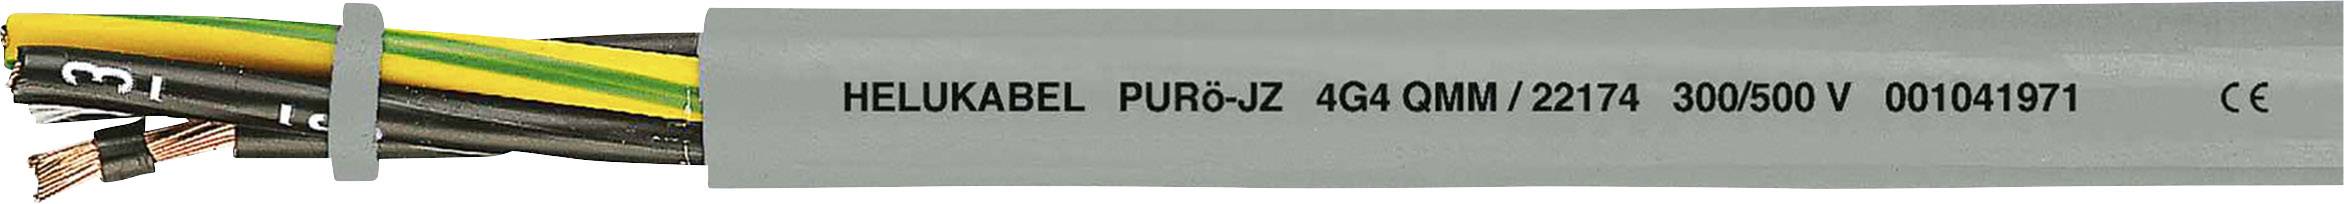 HELUKABEL PURö-JZ Steuerleitung 7 G 0.50 mm² Grau 22104-1000 1000 m